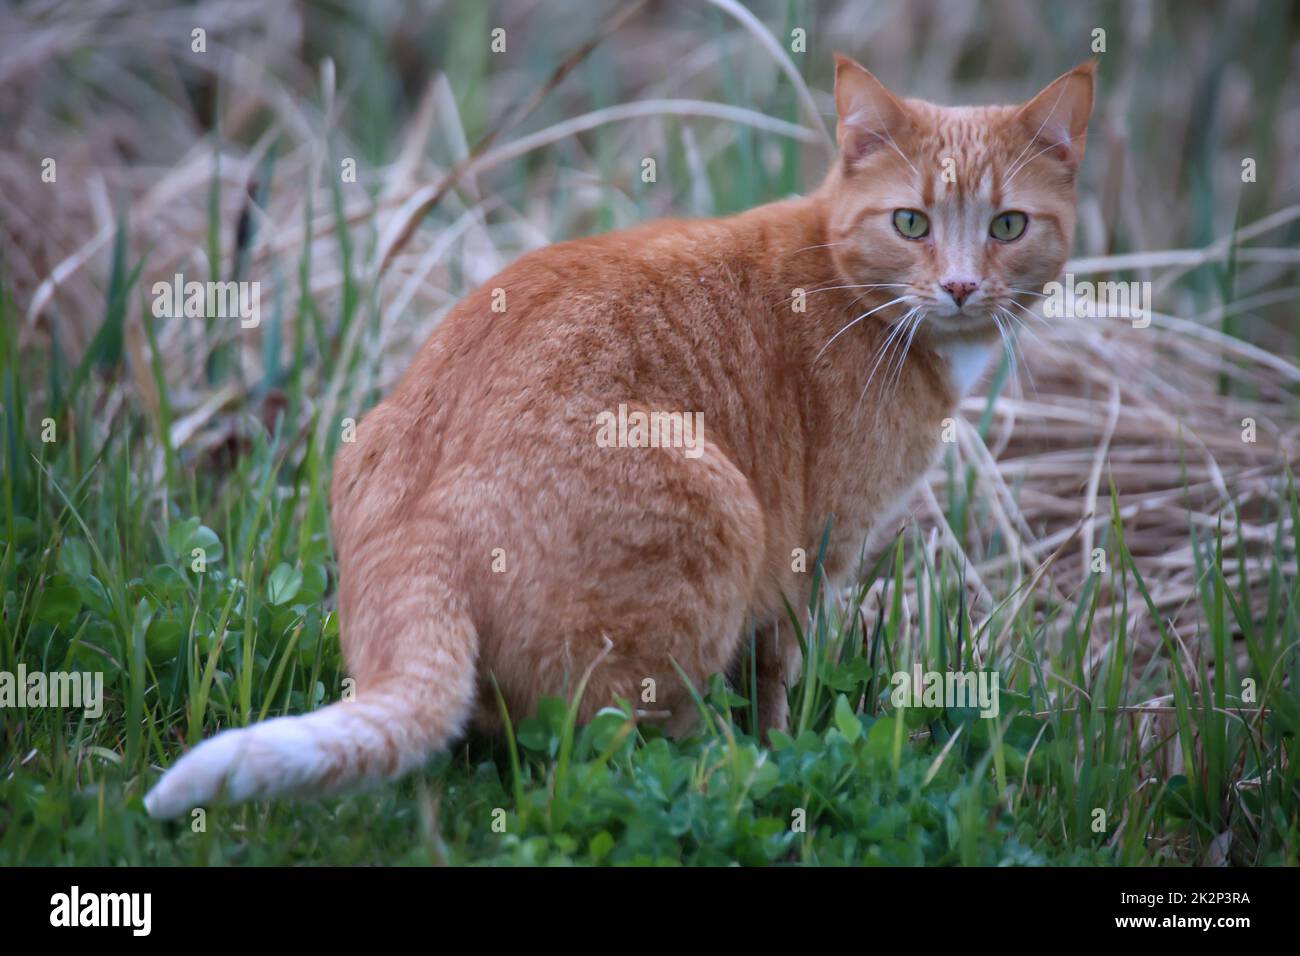 Portrait d'un chat joueur à fourrure brun rougeâtre. Banque D'Images